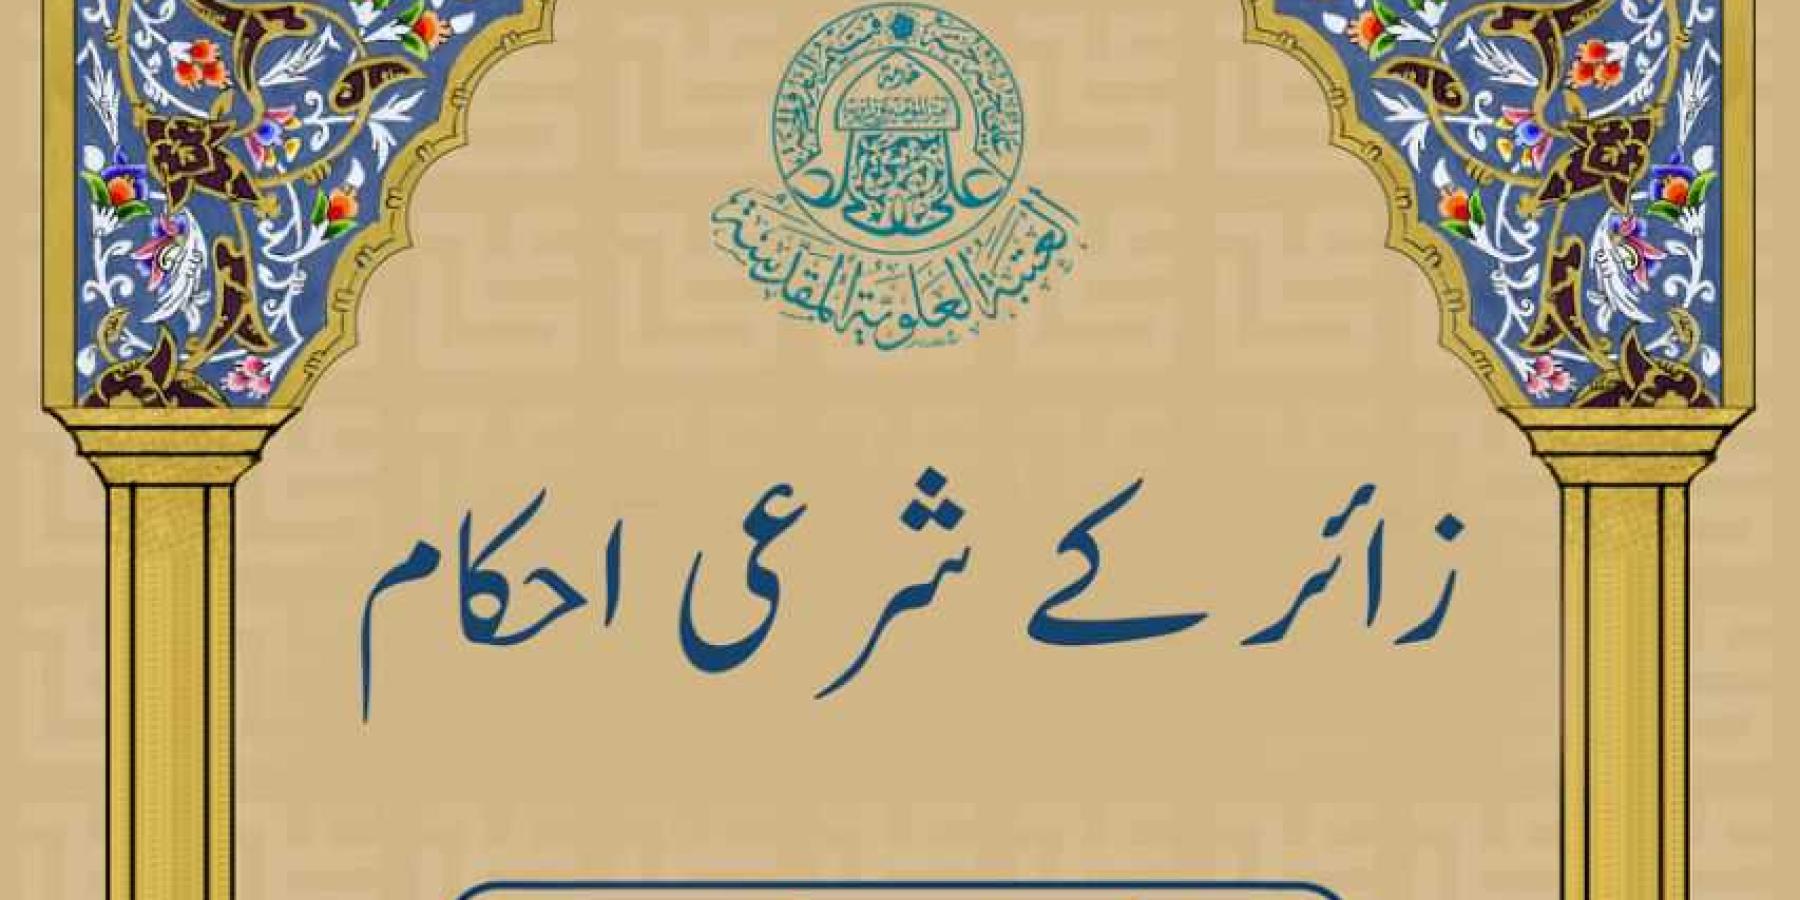 قسم الشؤون الدينية في العتبة العلوية المقدسة ينجز ترجمة كتاب (فقه الزائر) بالأردو 